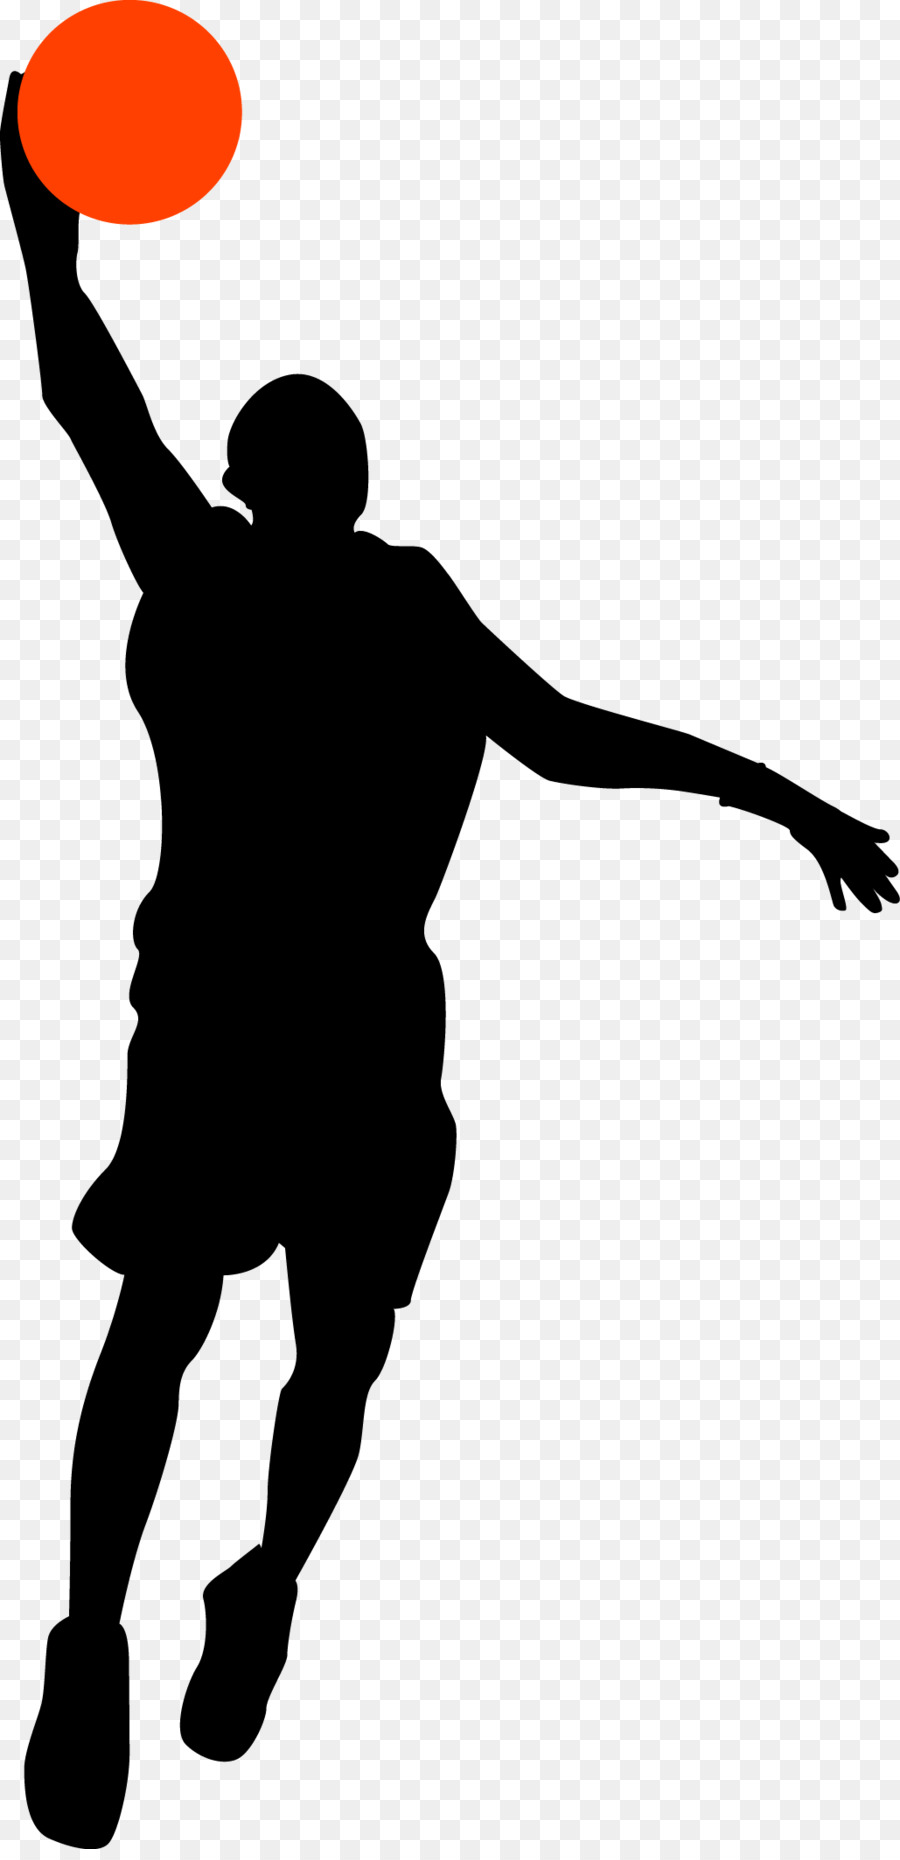 Basketball player Sport Athlete Sticker - Handsome shot man png download - 1029*2114 - Free Transparent Basketball png Download.